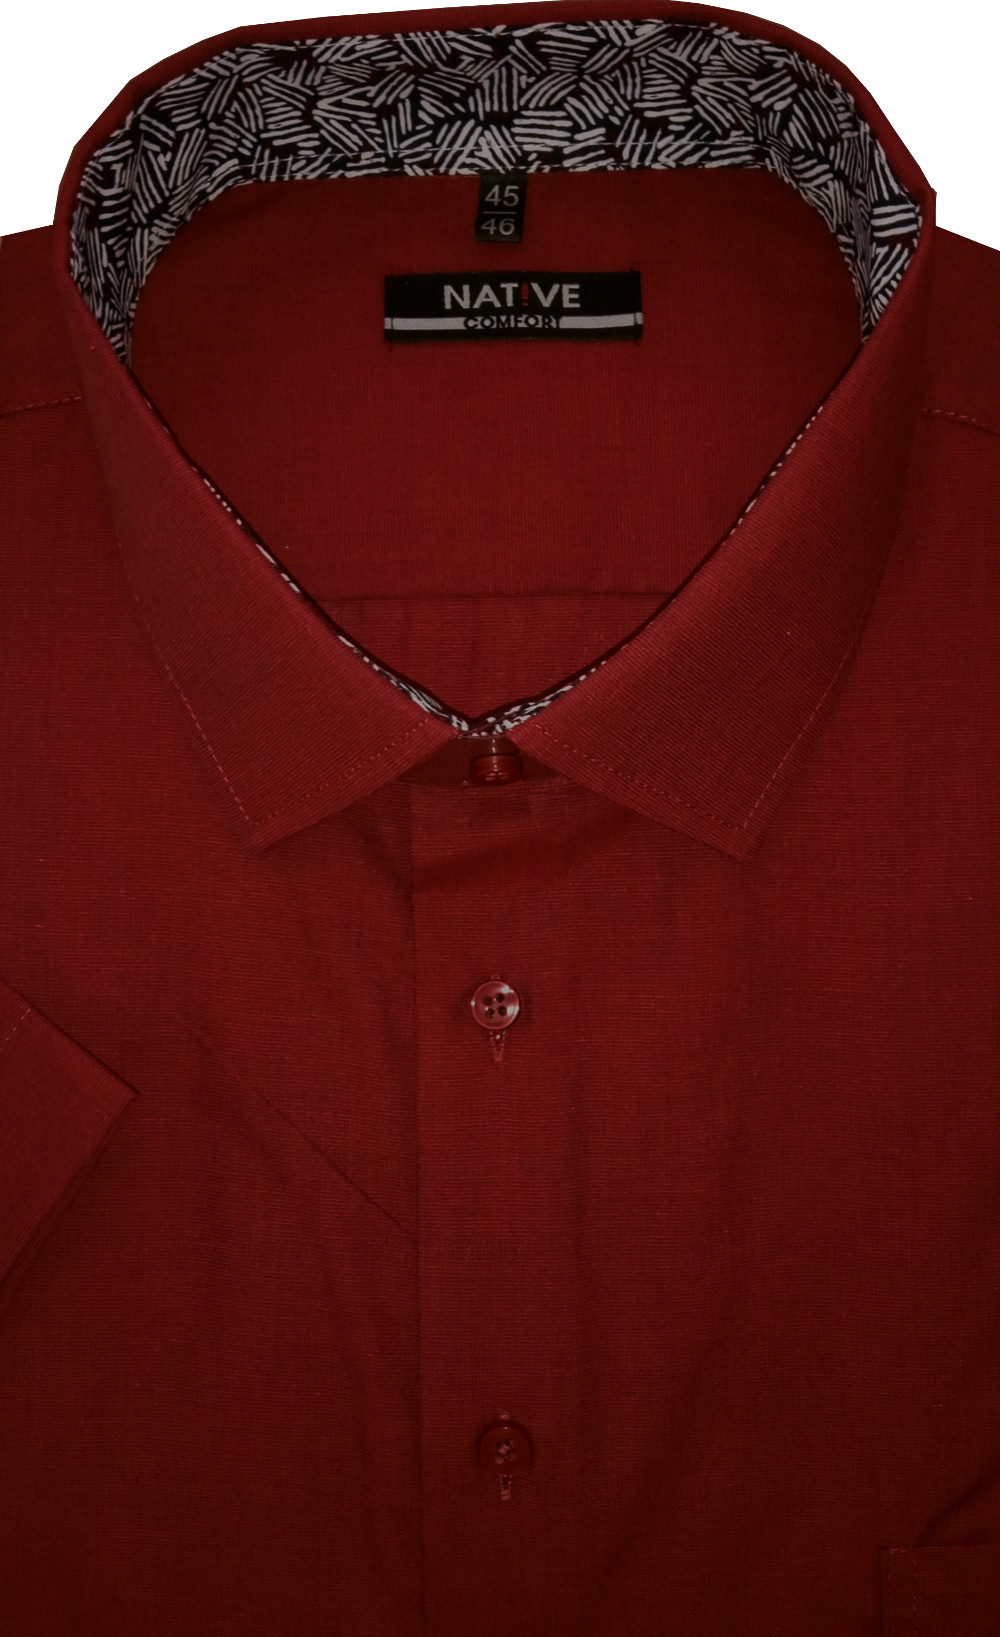 Pánská košile (vínová) s krátkým rukávem, vel. 45/46 - N220/315